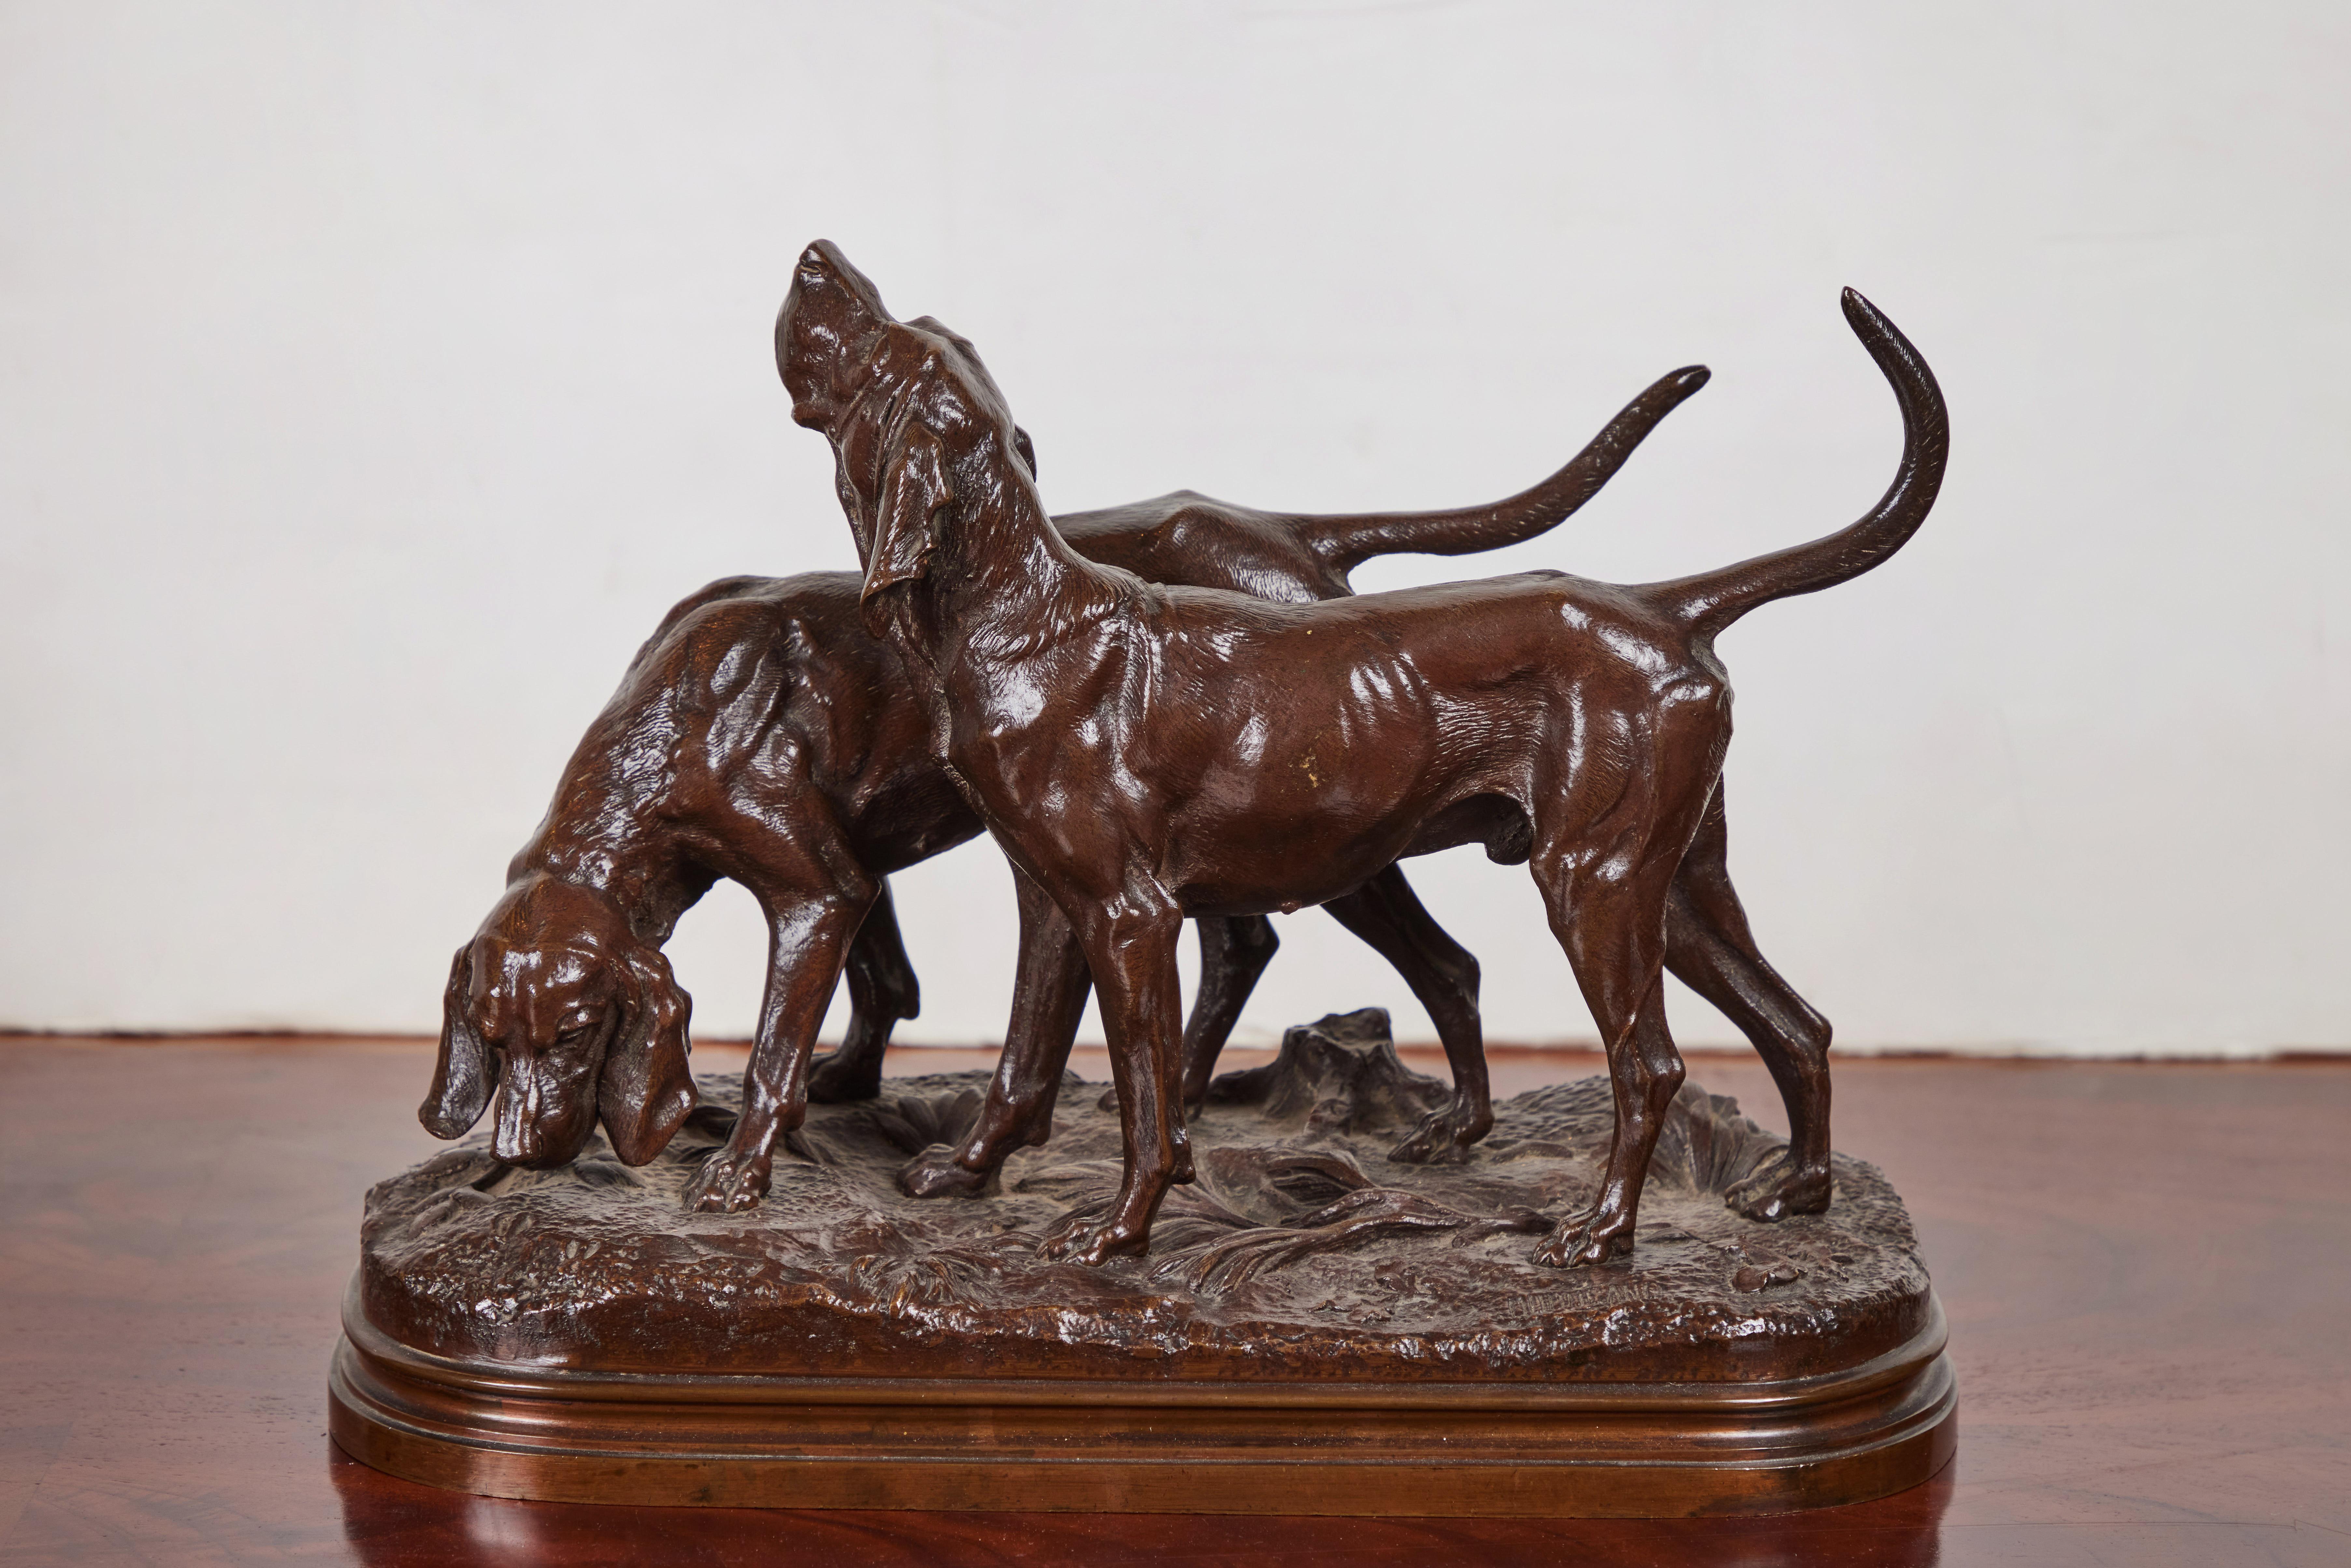 Cette sculpture en bronze patiné, d'une grande vivacité et d'une grande beauté, représente deux chiens de chasse sur un sol forestier luxuriant. Elle est l'œuvre de l'artiste français Alfred Dubucand (1828-1894).

Partisan du réalisme romantique,